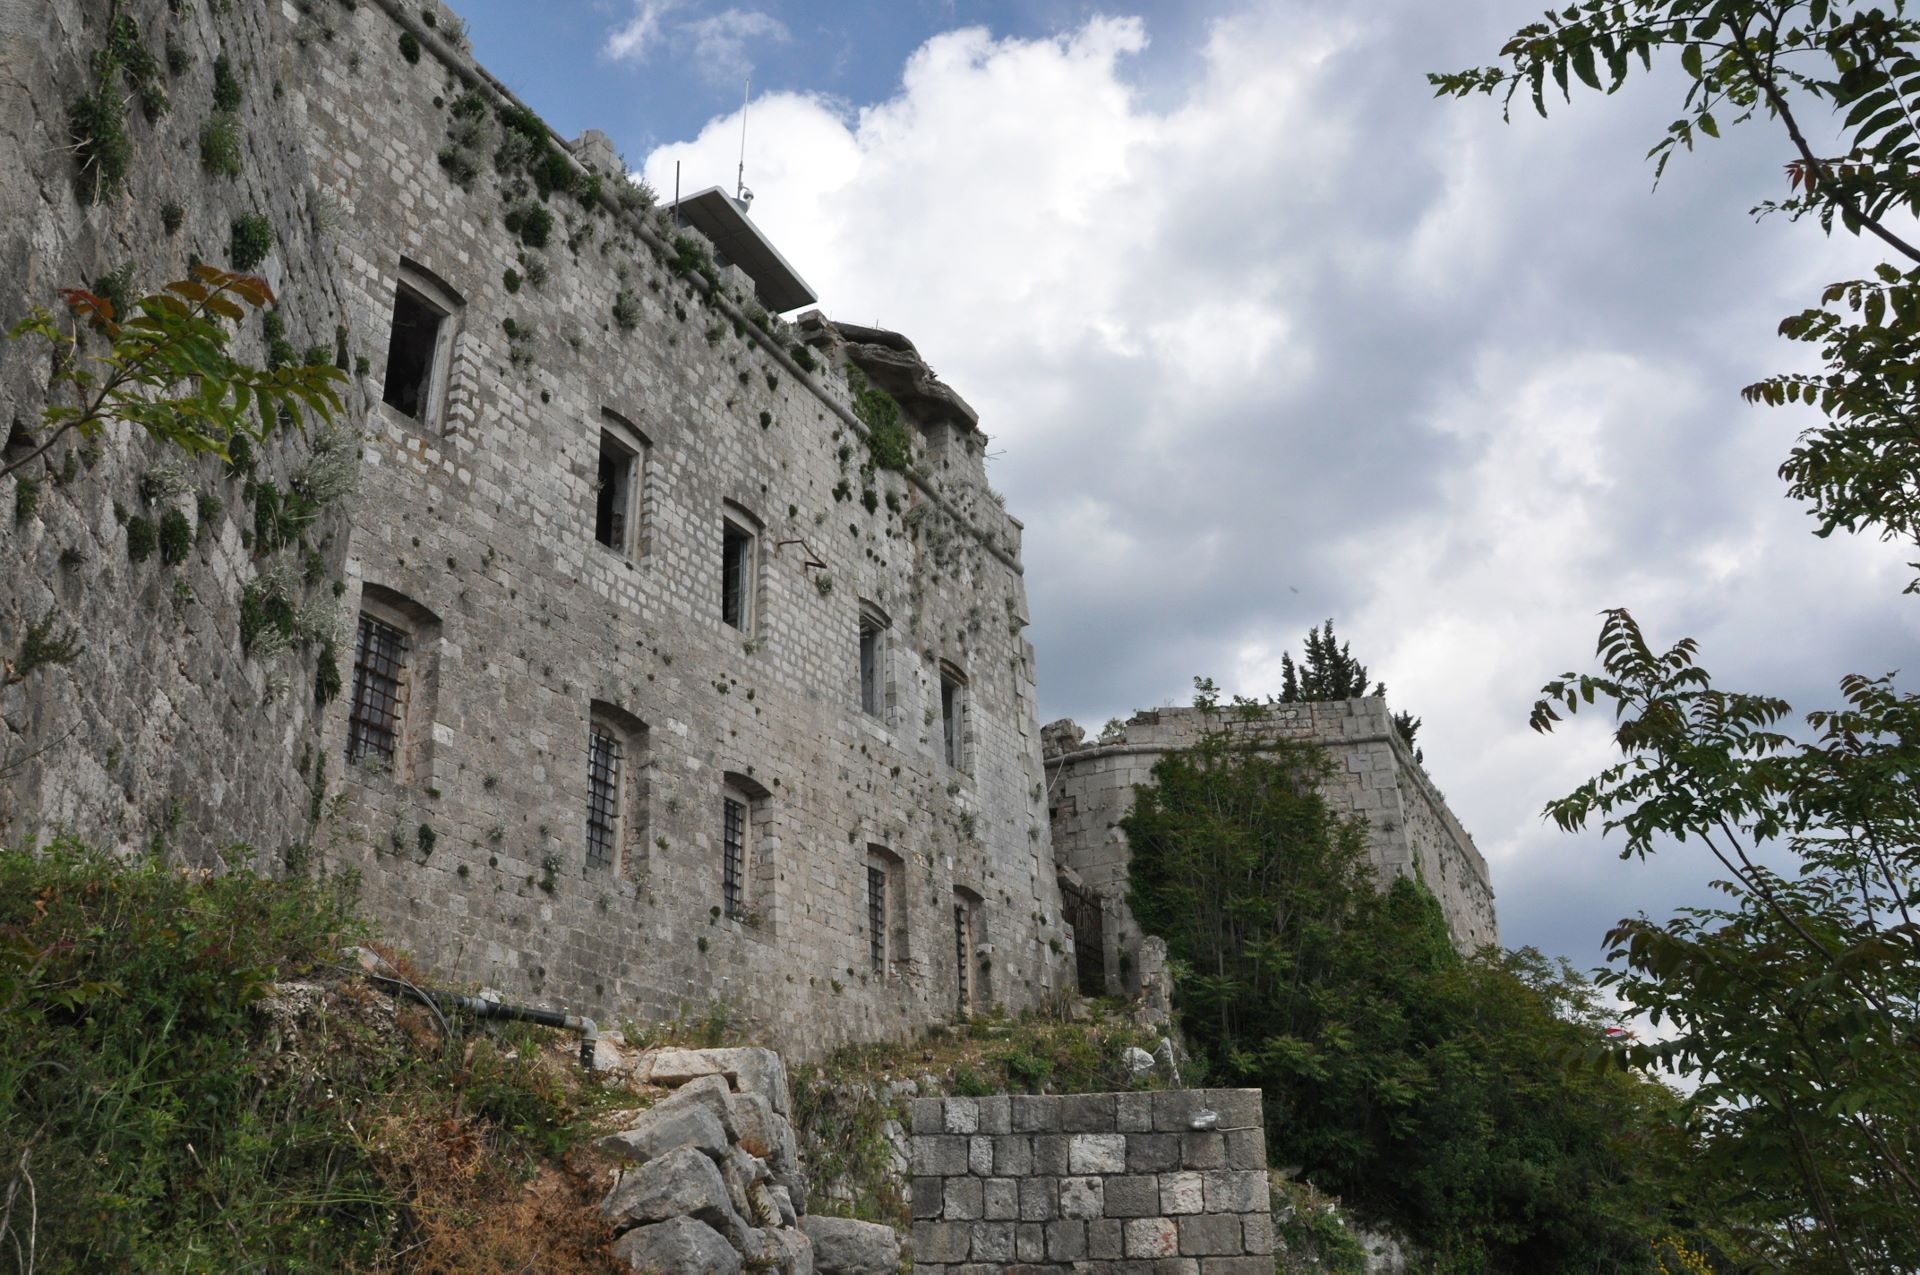 Festung aus napoleonischer Zeit am Gipfel des Bergs Srđ